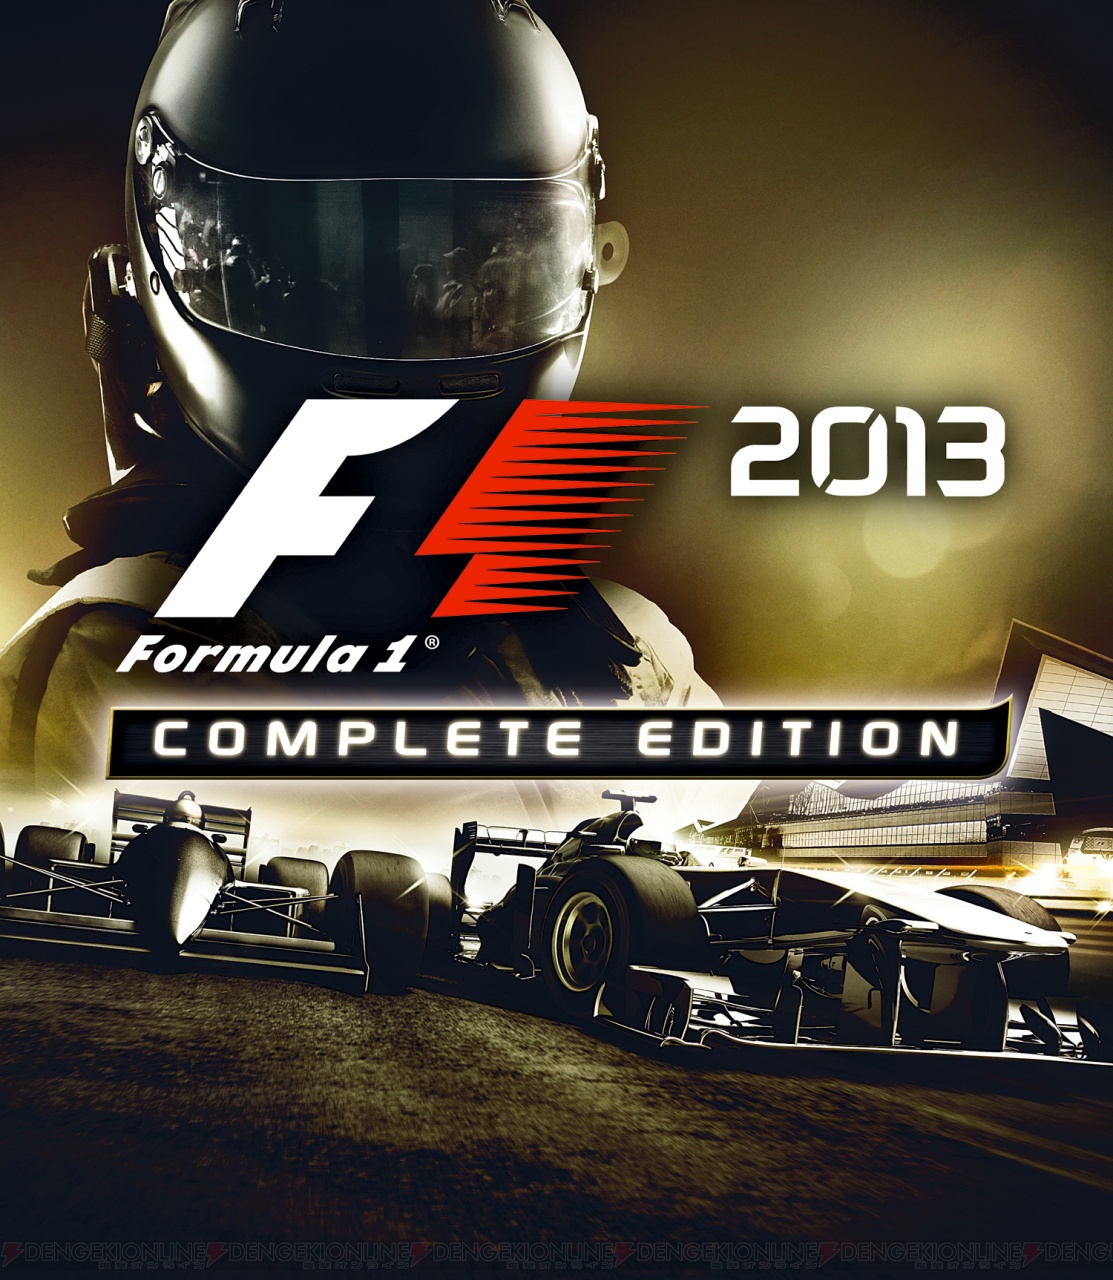 F1 2013』本編と有料DLCをセットにした『コンプリートエディション』が6月26日に発売！ クラシックコンテンツが充実した1本に